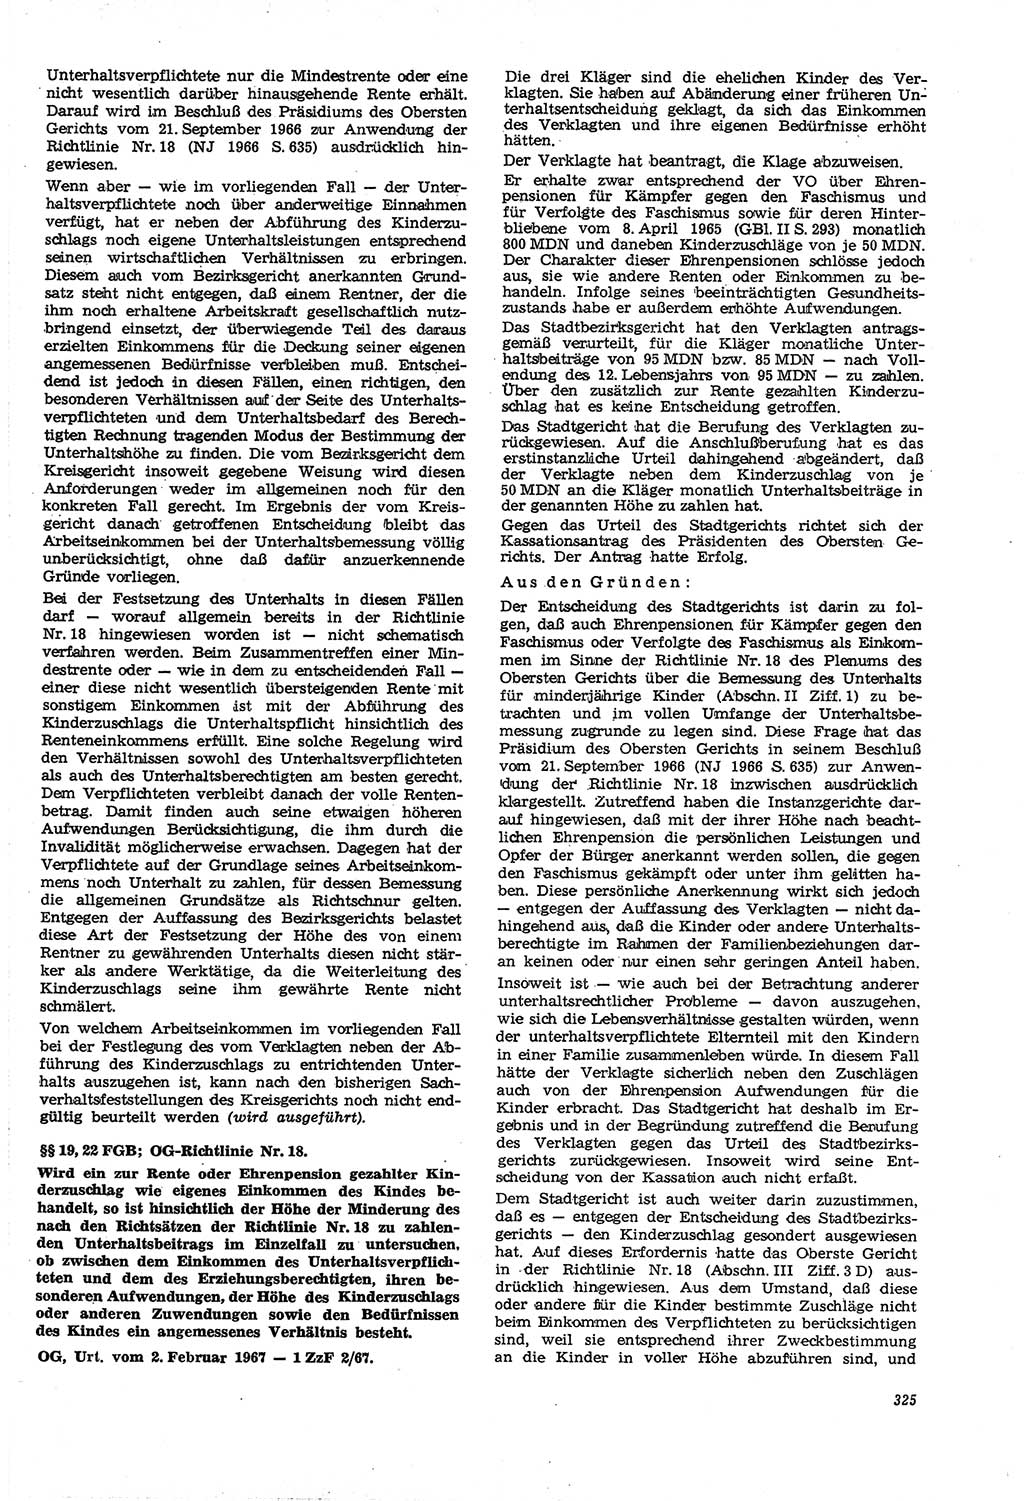 Neue Justiz (NJ), Zeitschrift für Recht und Rechtswissenschaft [Deutsche Demokratische Republik (DDR)], 21. Jahrgang 1967, Seite 325 (NJ DDR 1967, S. 325)